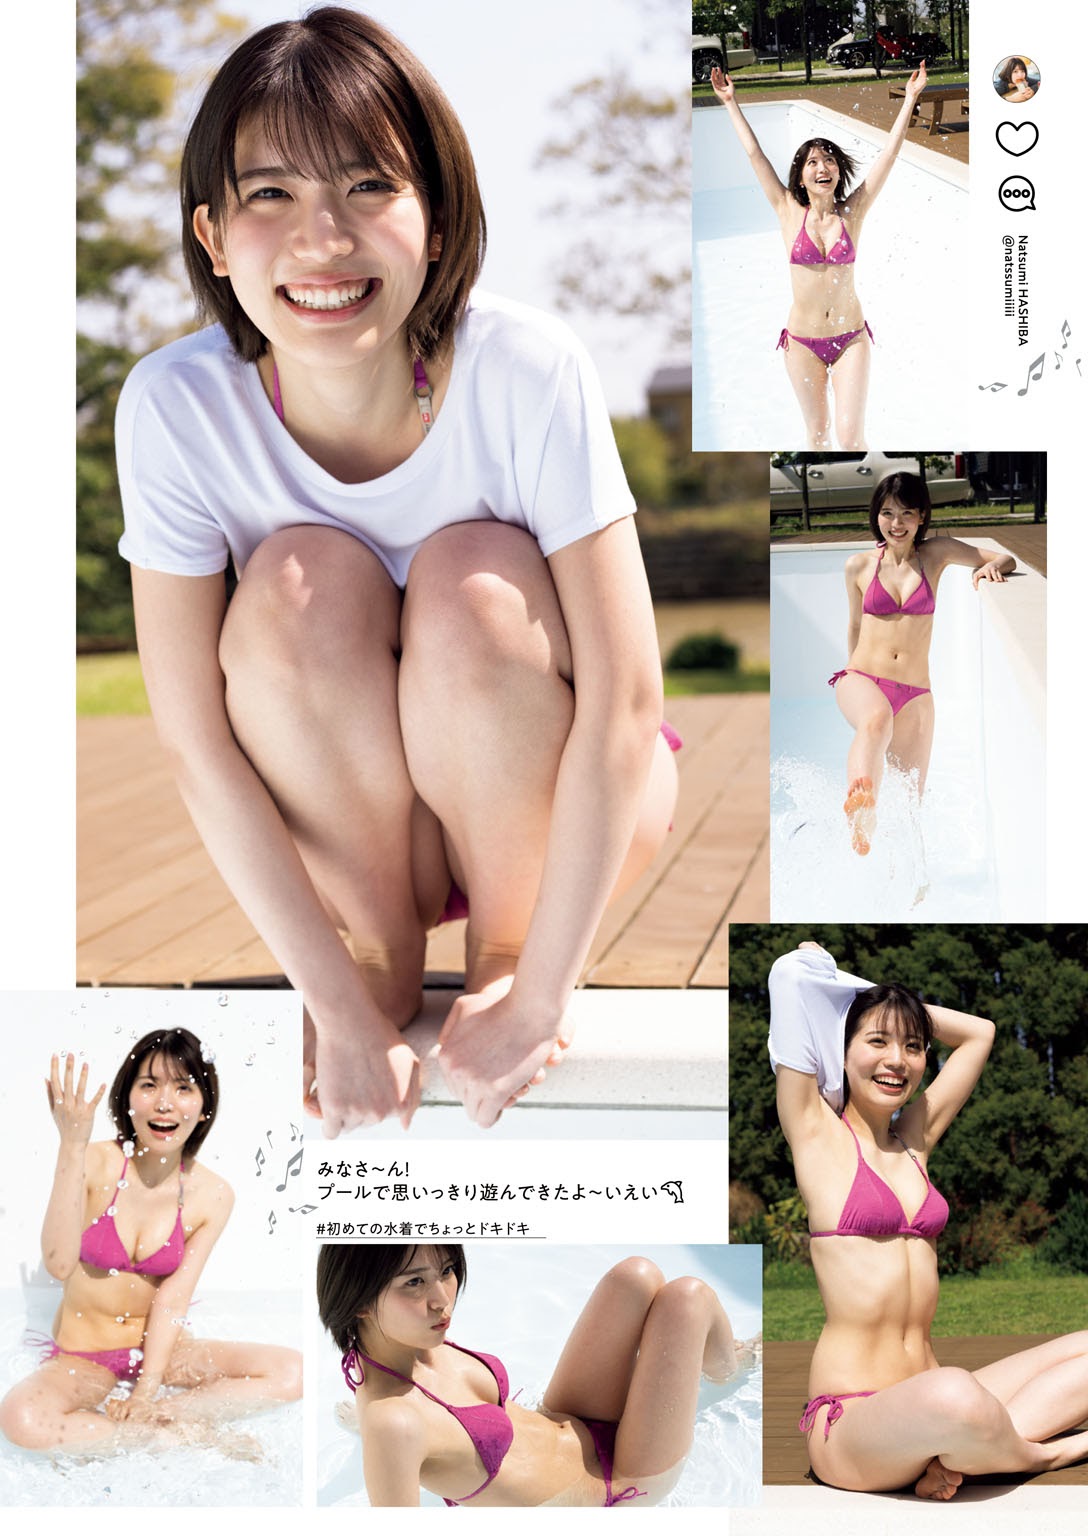 Natsumi Hashiba 羽柴なつみ, Weekly Playboy 2021 No.23 (週刊プレイボーイ 2021年23号)